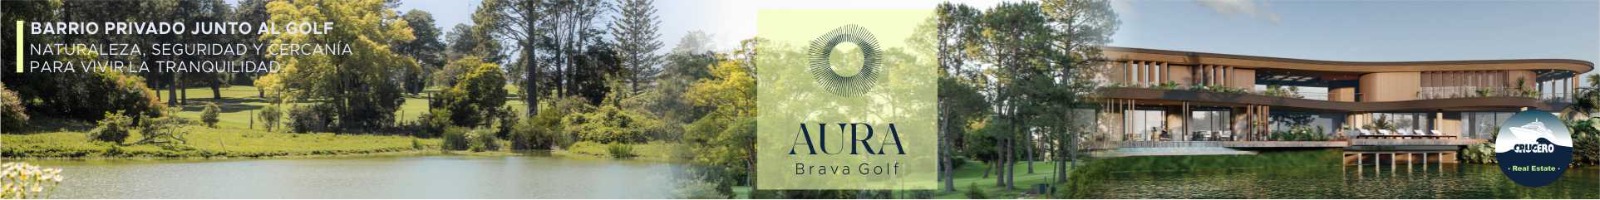 Banner Destacado Aura Brava Golf